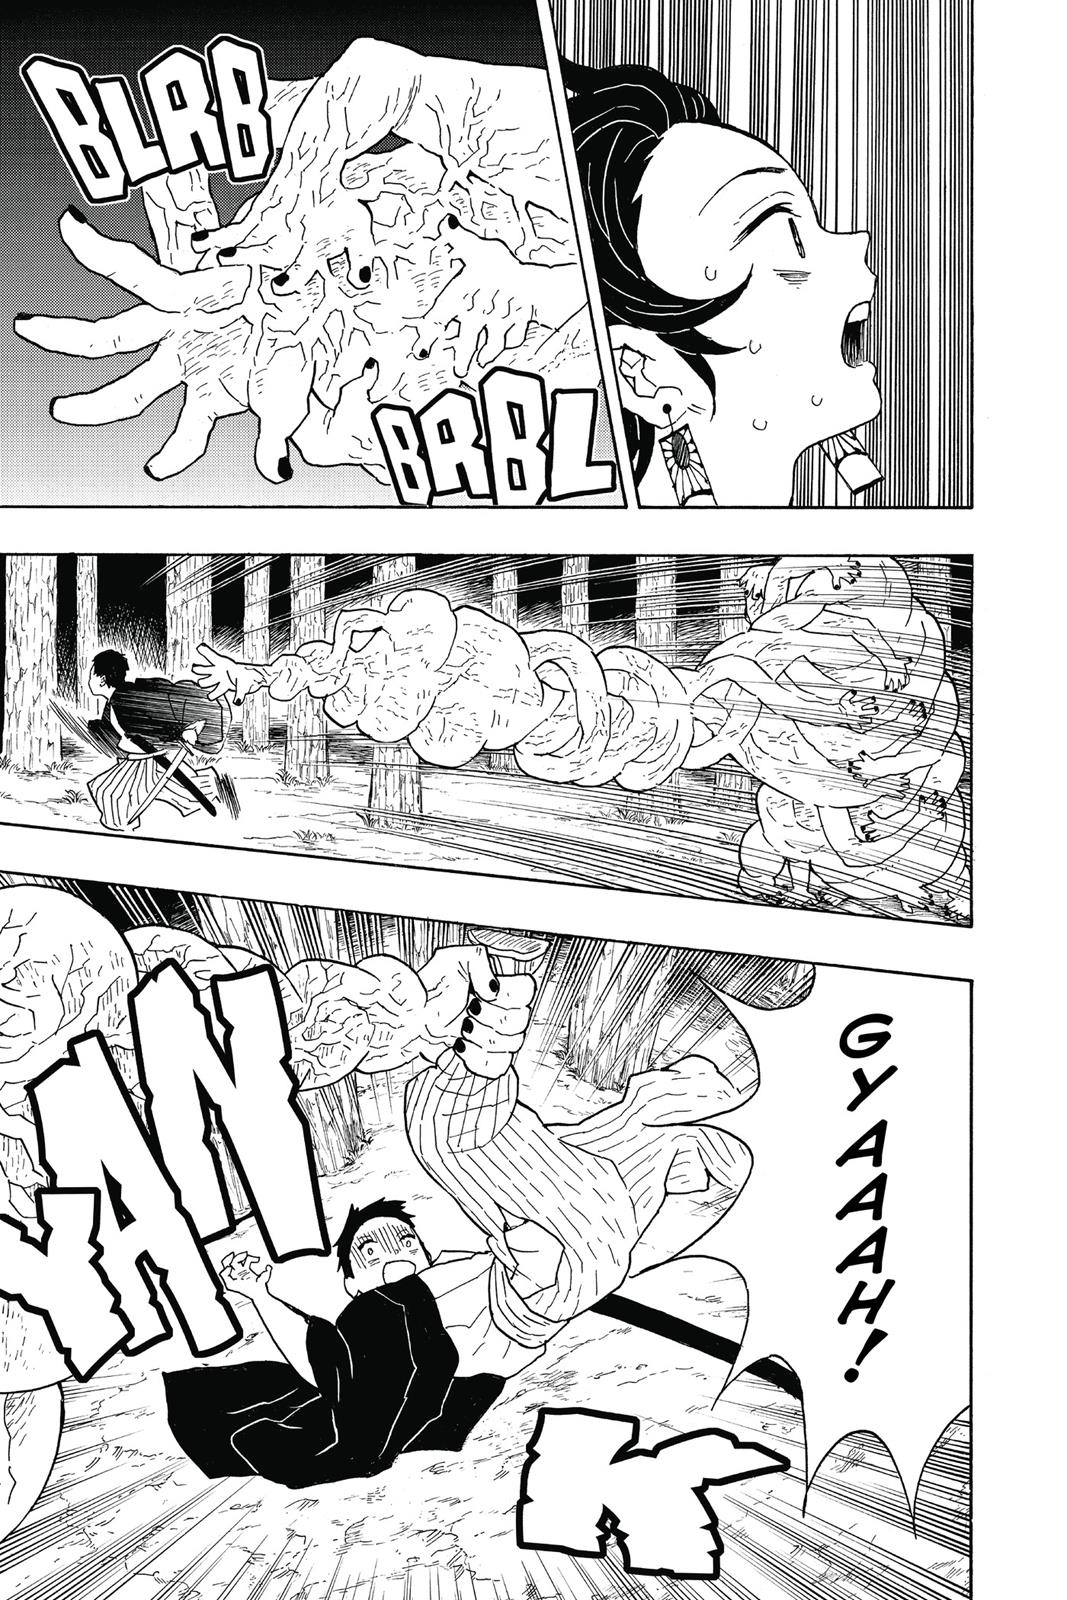 Demon Slayer Manga Manga Chapter - 6 - image 8